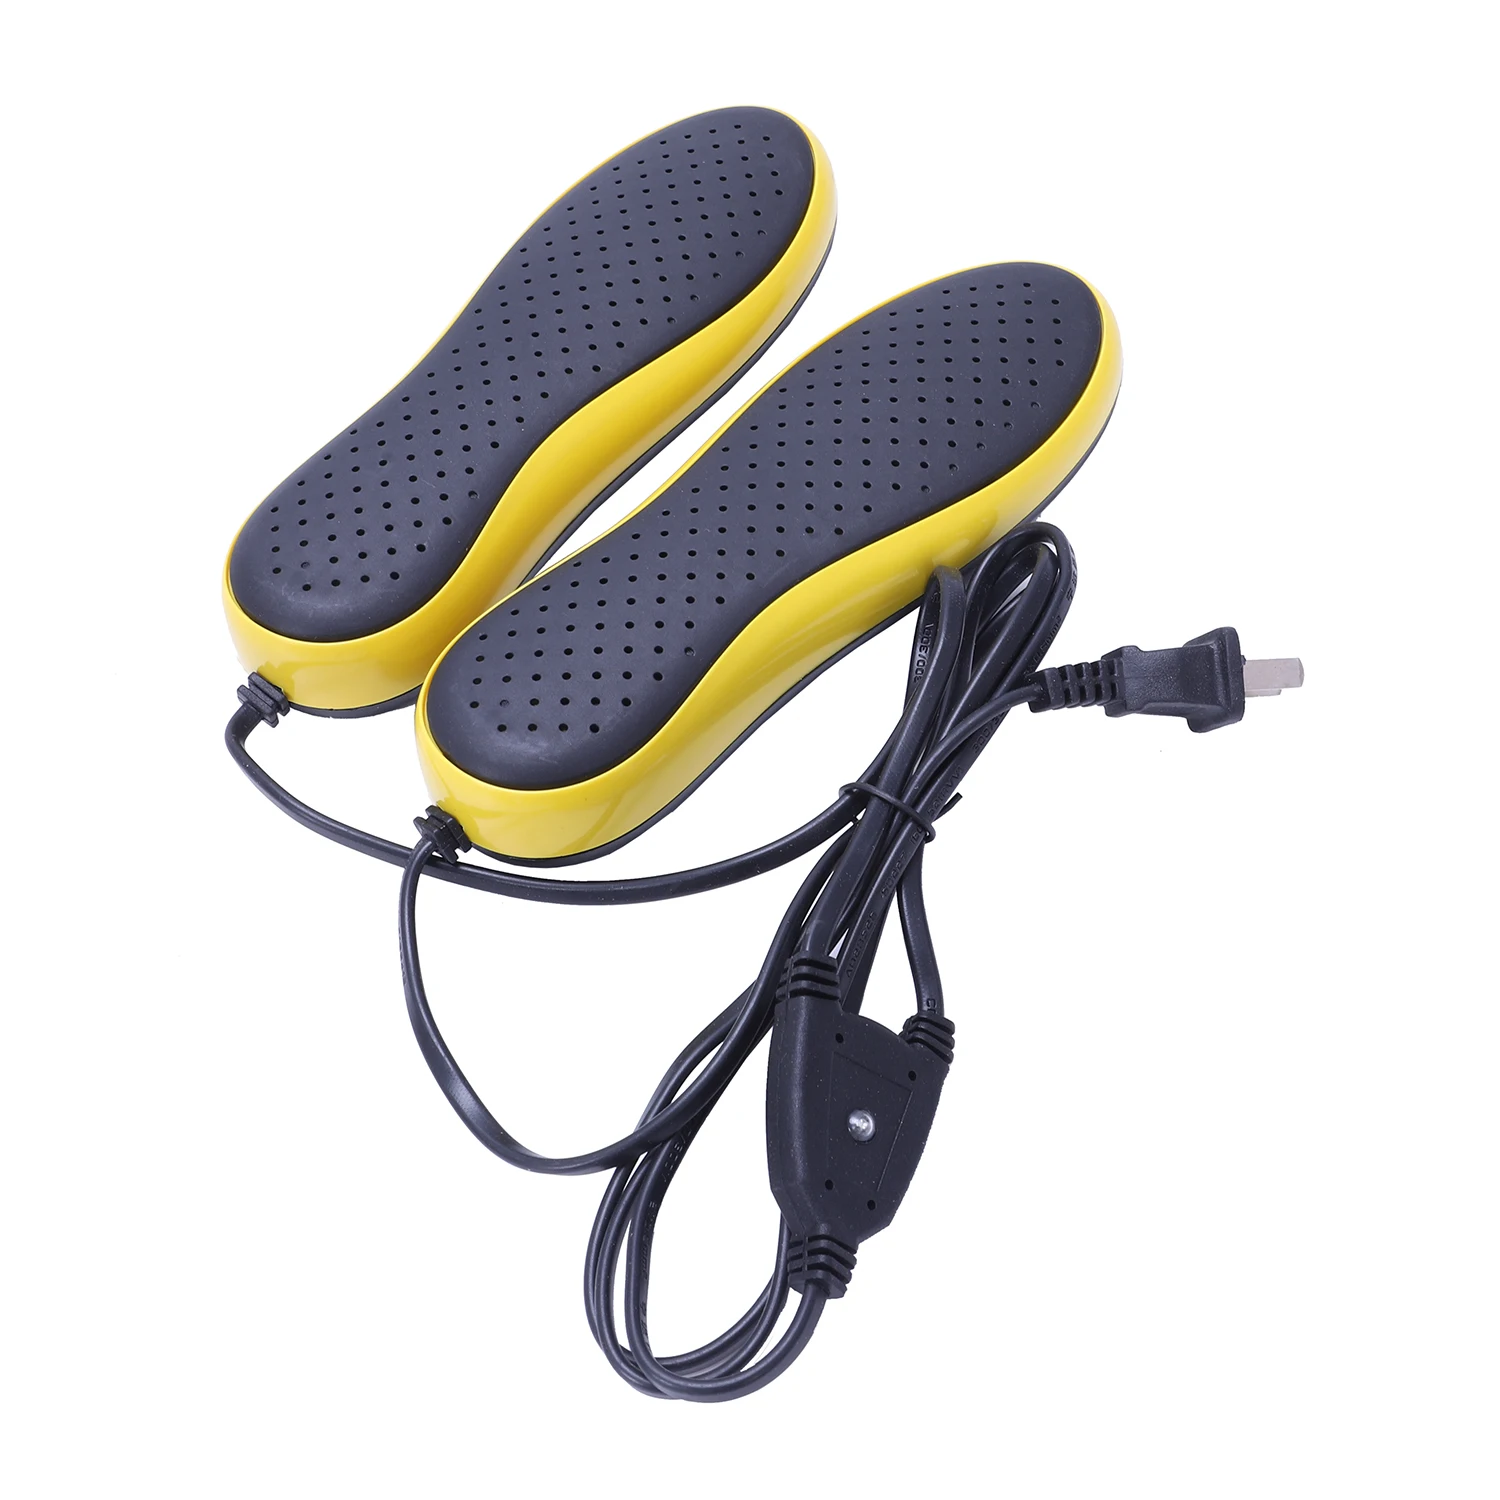 Портативная электрическая сушилка для обуви 220V осушитель Стерилизации Осушитель обуви запеченная сушилка для обуви 20W(вилка США